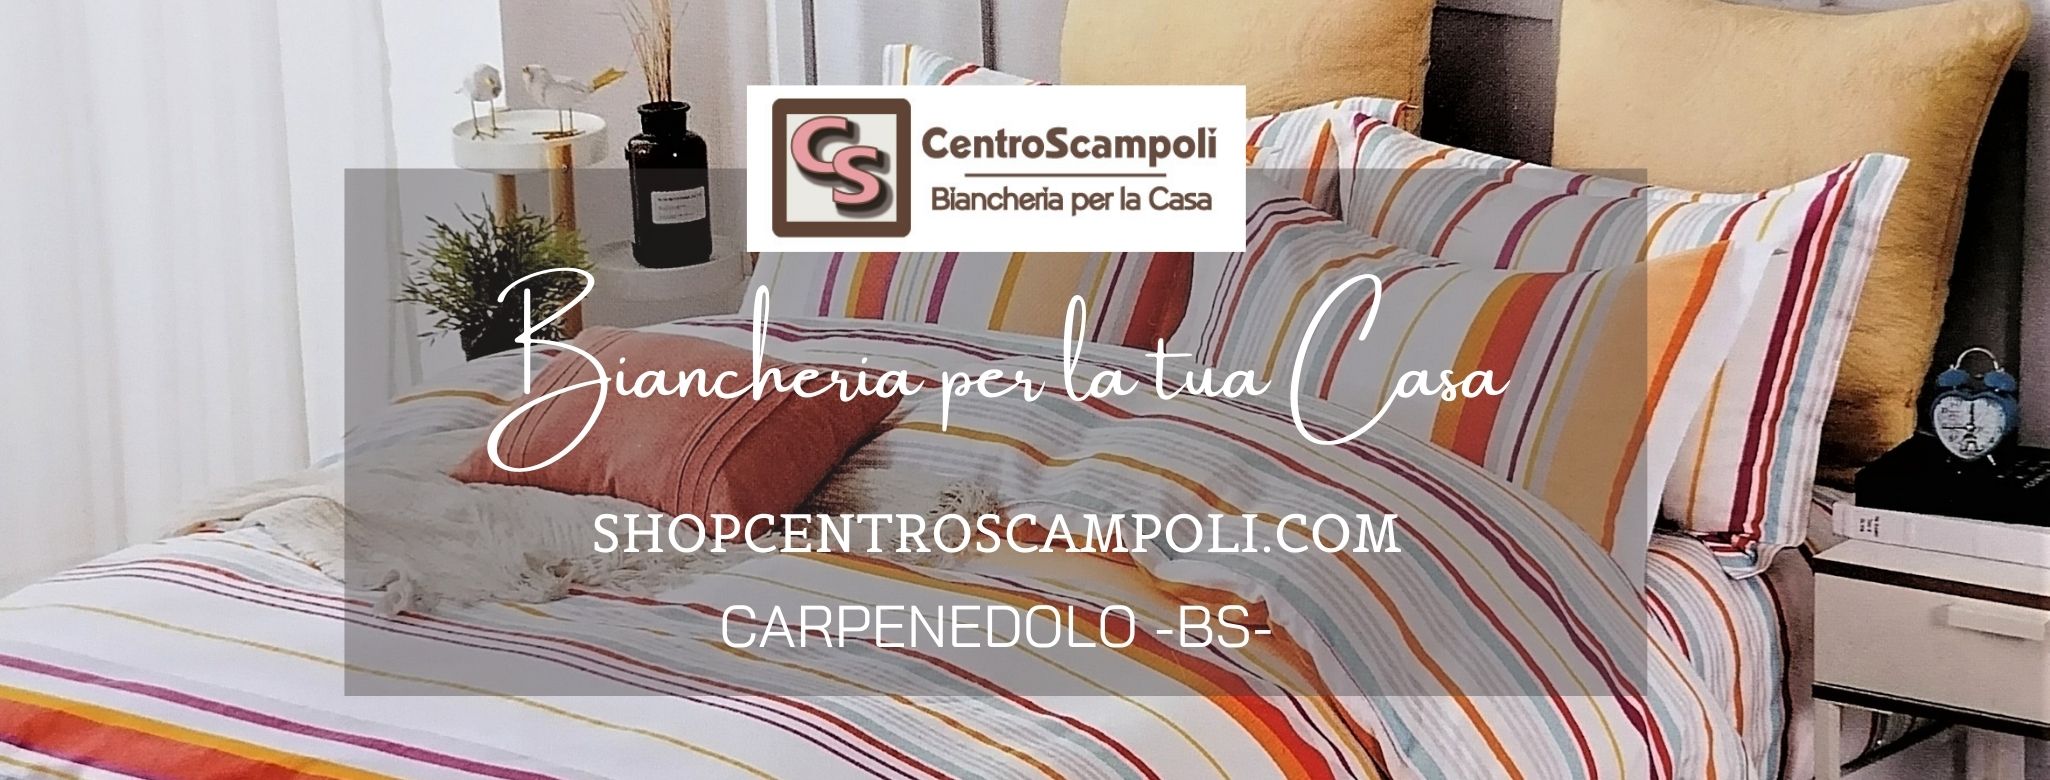 Foto 4 - La top biancheria per la casa è solo al Centro Scampoli di Carpenedolo (BS)